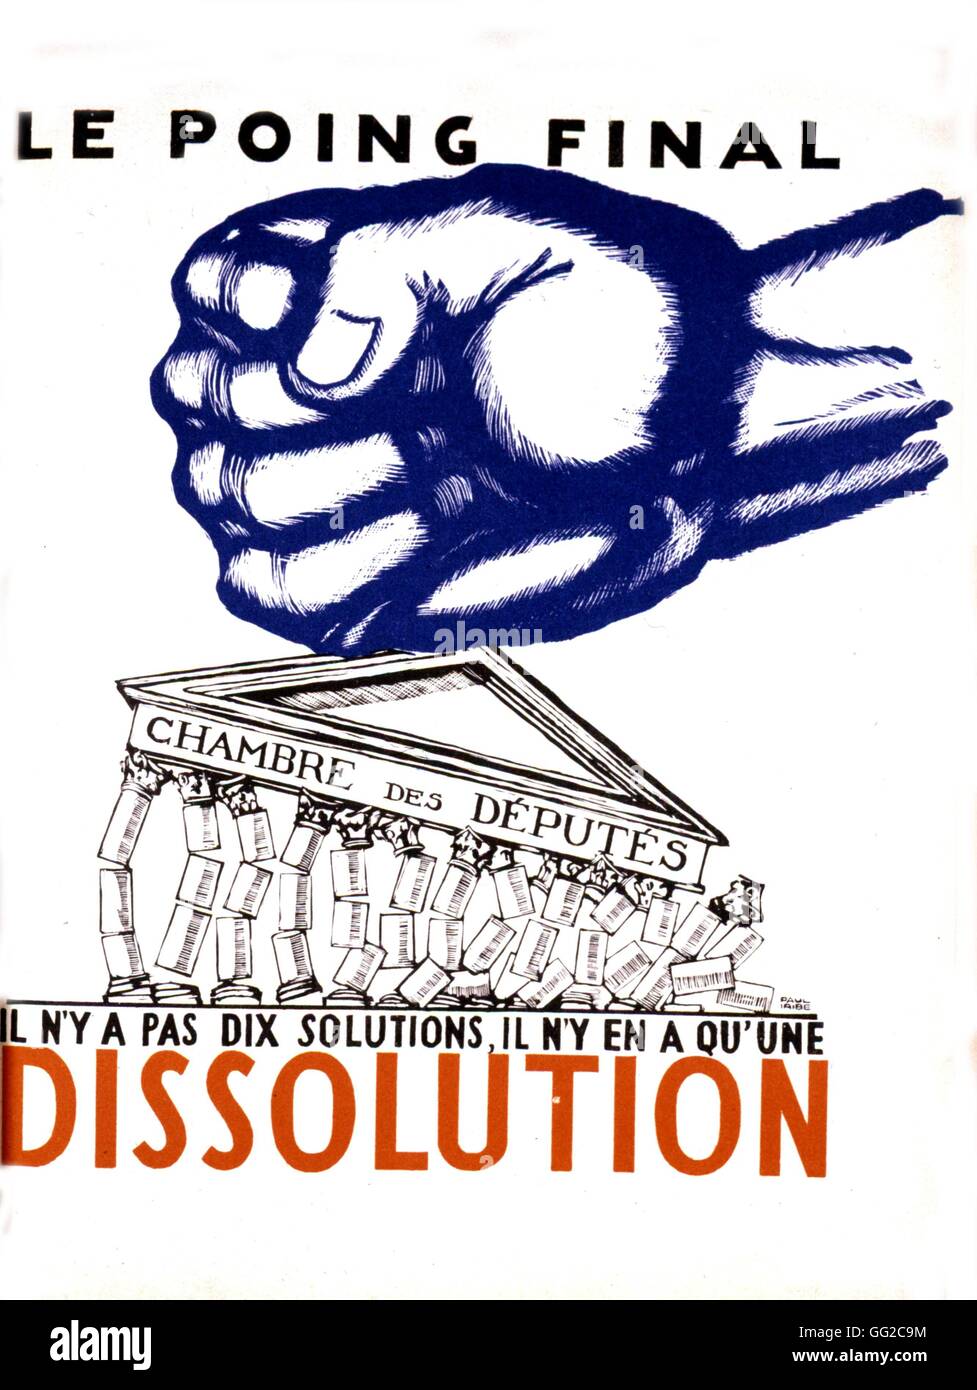 Dessin de Paul Iribe. Le punch final, "dissolution". La chambre des députés s'effondrer sous un poinçon 1934 France Banque D'Images